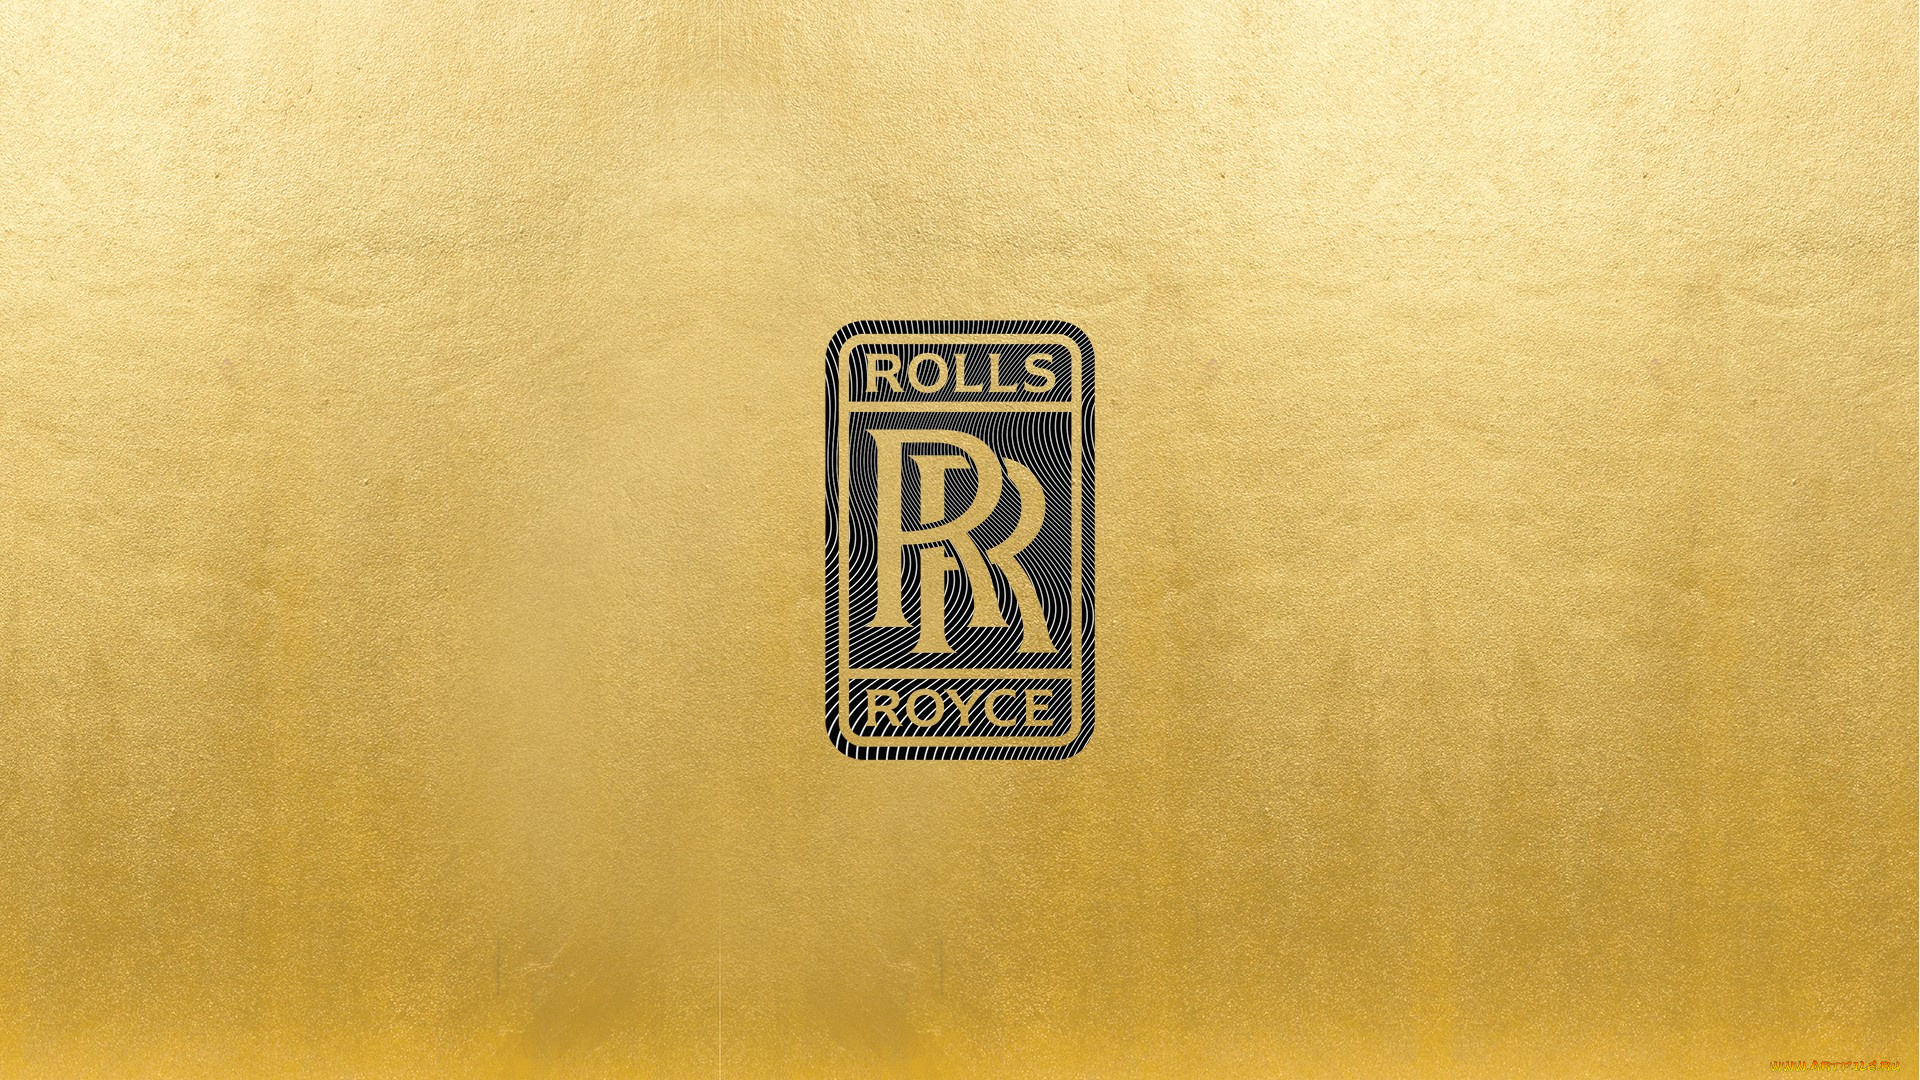 rolls-royce, бренды, авто-мото, , rolls-royce, group, plc, британская, компания, производство, оборудования, авиация, морские, судна, энергетическое, оборудование, автомобили